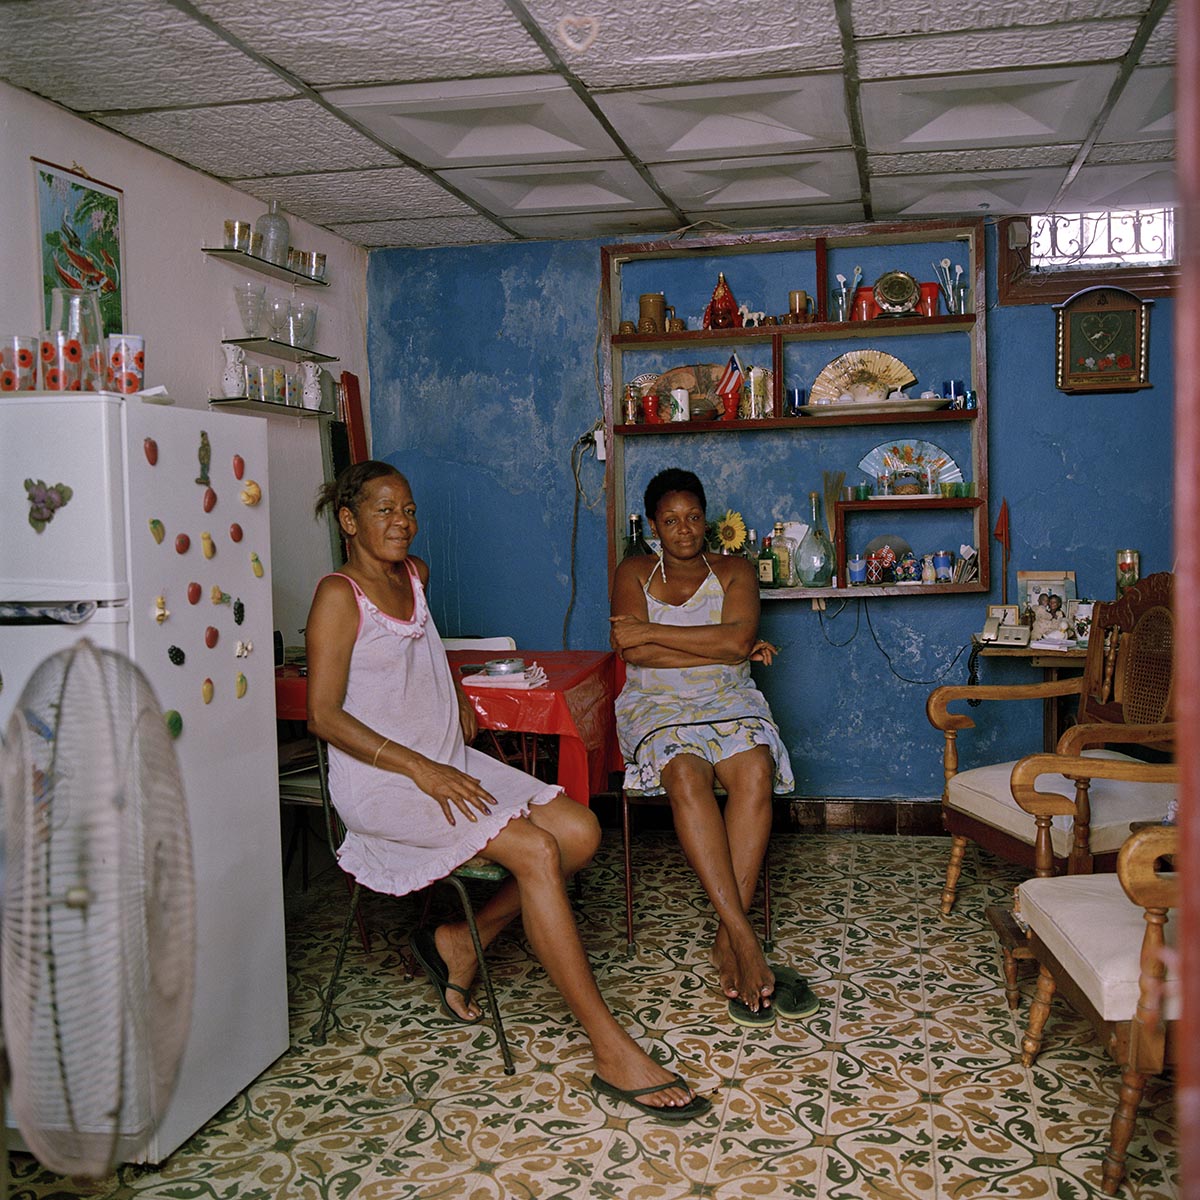 Intervista a Carolina Sandretto. Un’indagine fotografica sulla società cubana